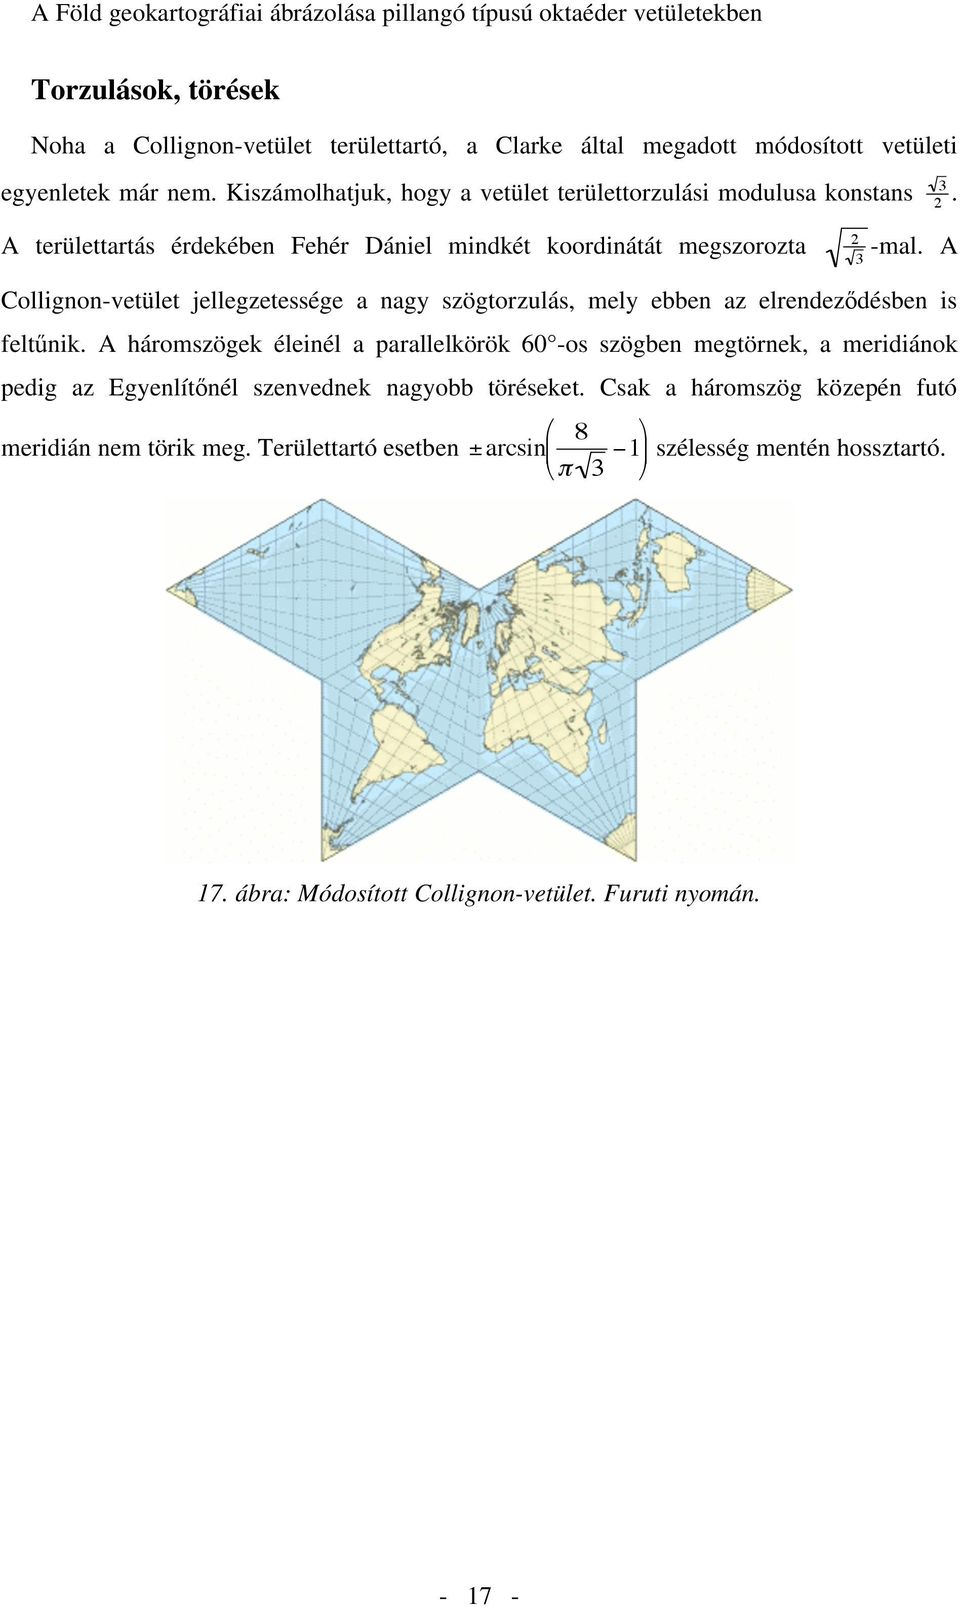 A Collignon-vetület jellegzetessége a nagy szögtorzulás, mely ebben az elrendez désben is felt nik.